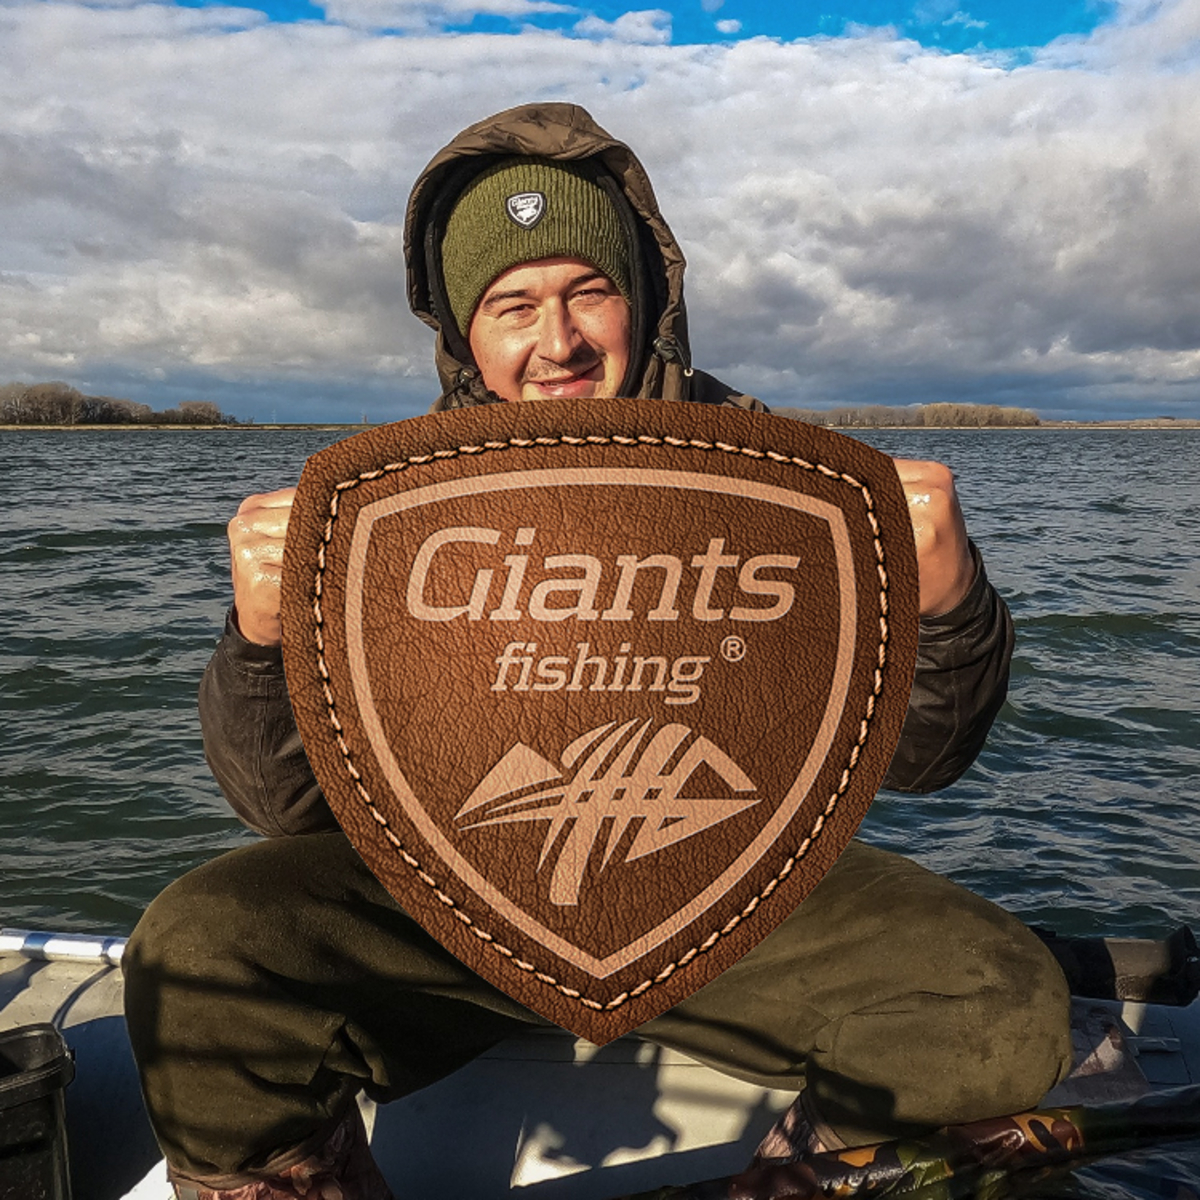 Akční sety od Giants Fishing jsou tady!